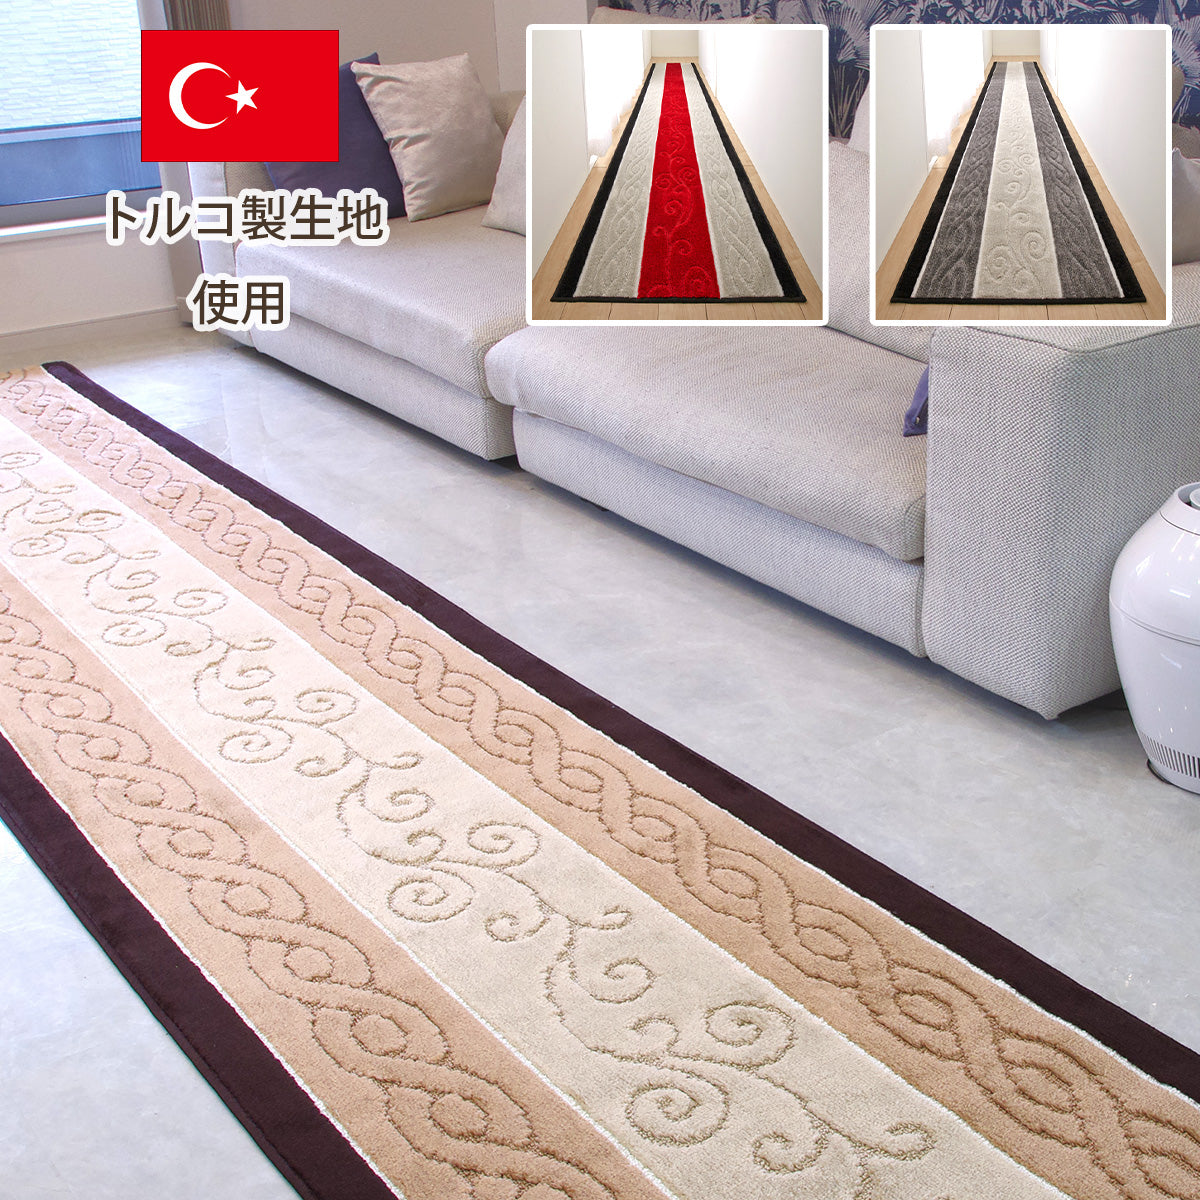 トルコ製生地使用マットシリーズ「ステラ」廊下敷きカーペット